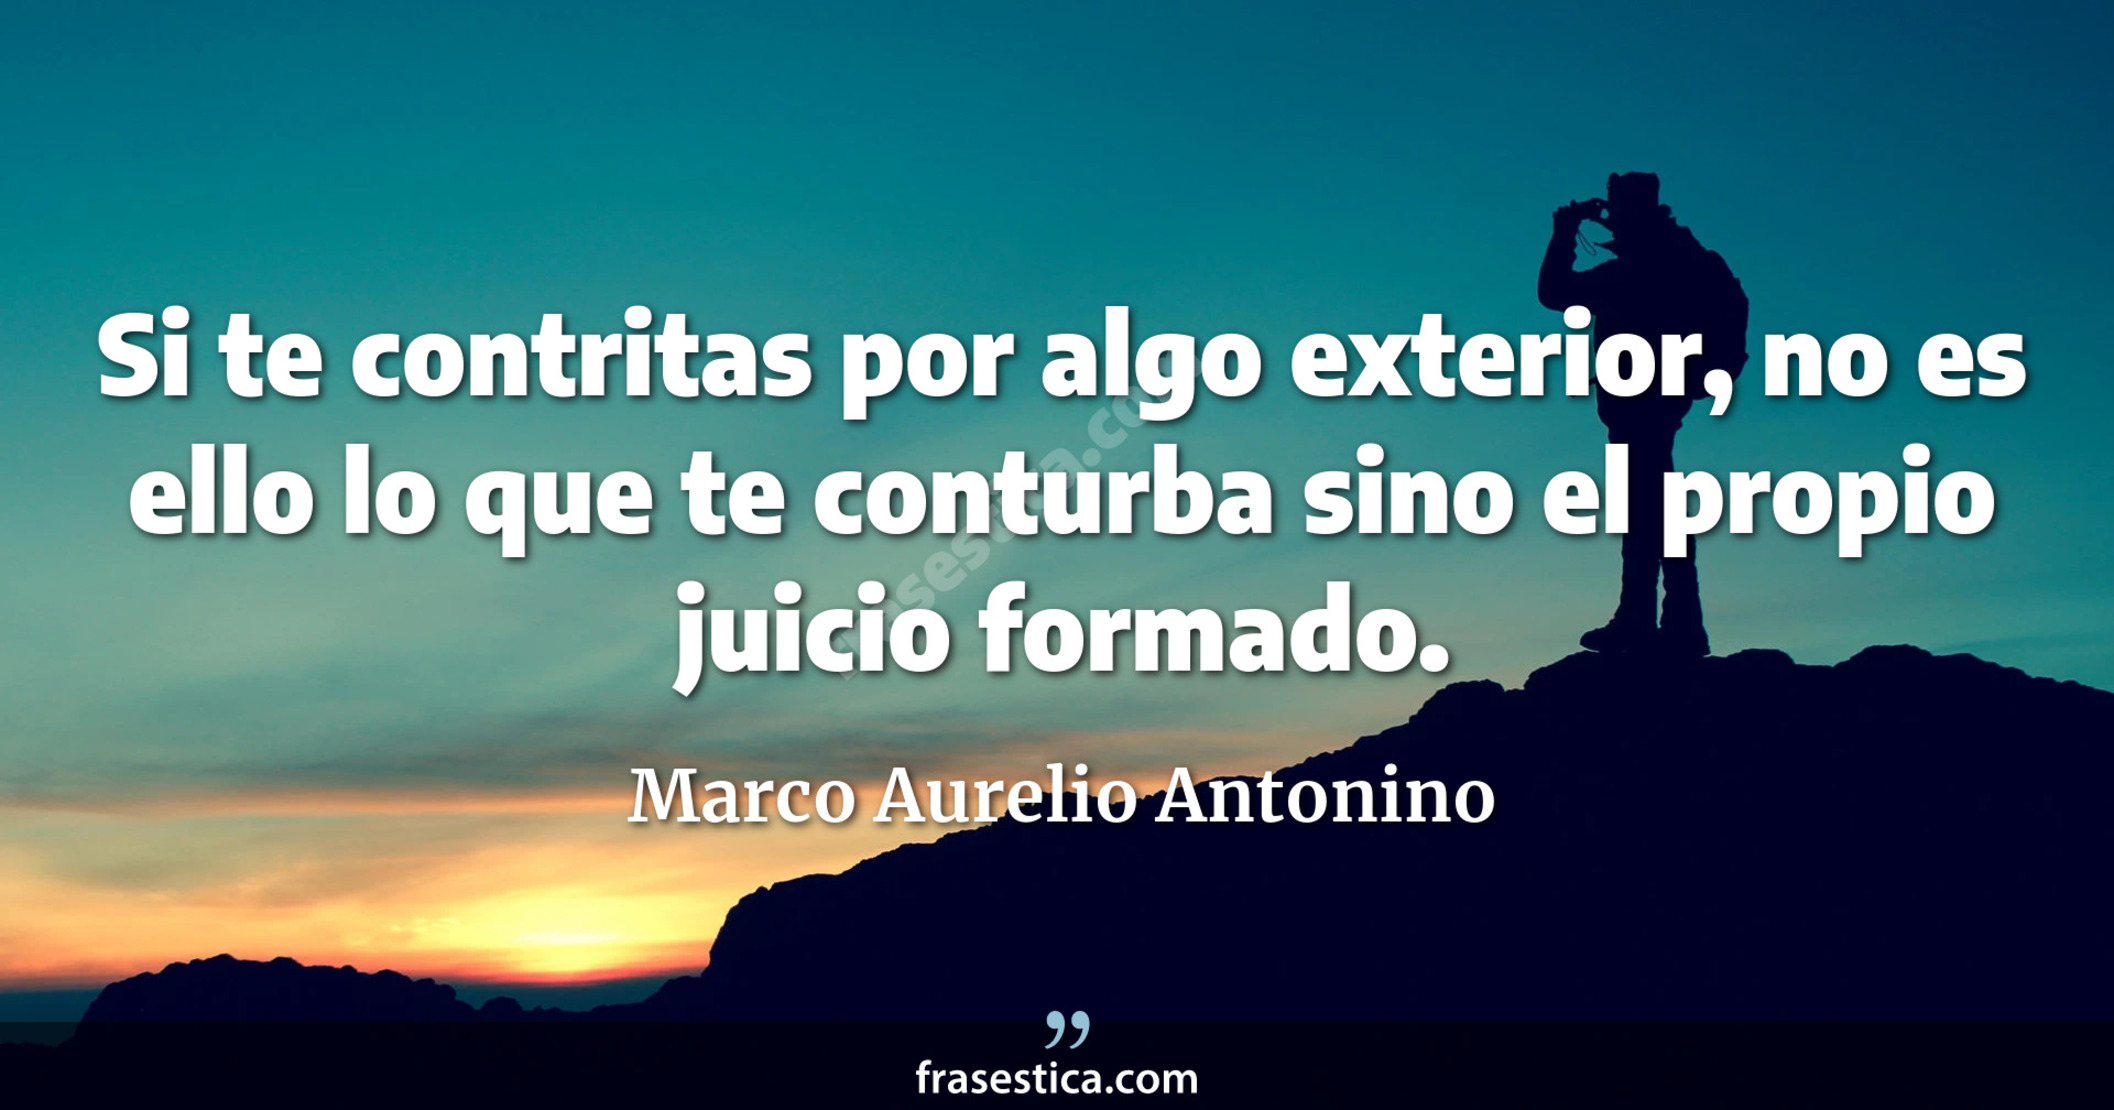 Si te contritas por algo exterior, no es ello lo que te conturba sino el propio juicio formado. - Marco Aurelio Antonino